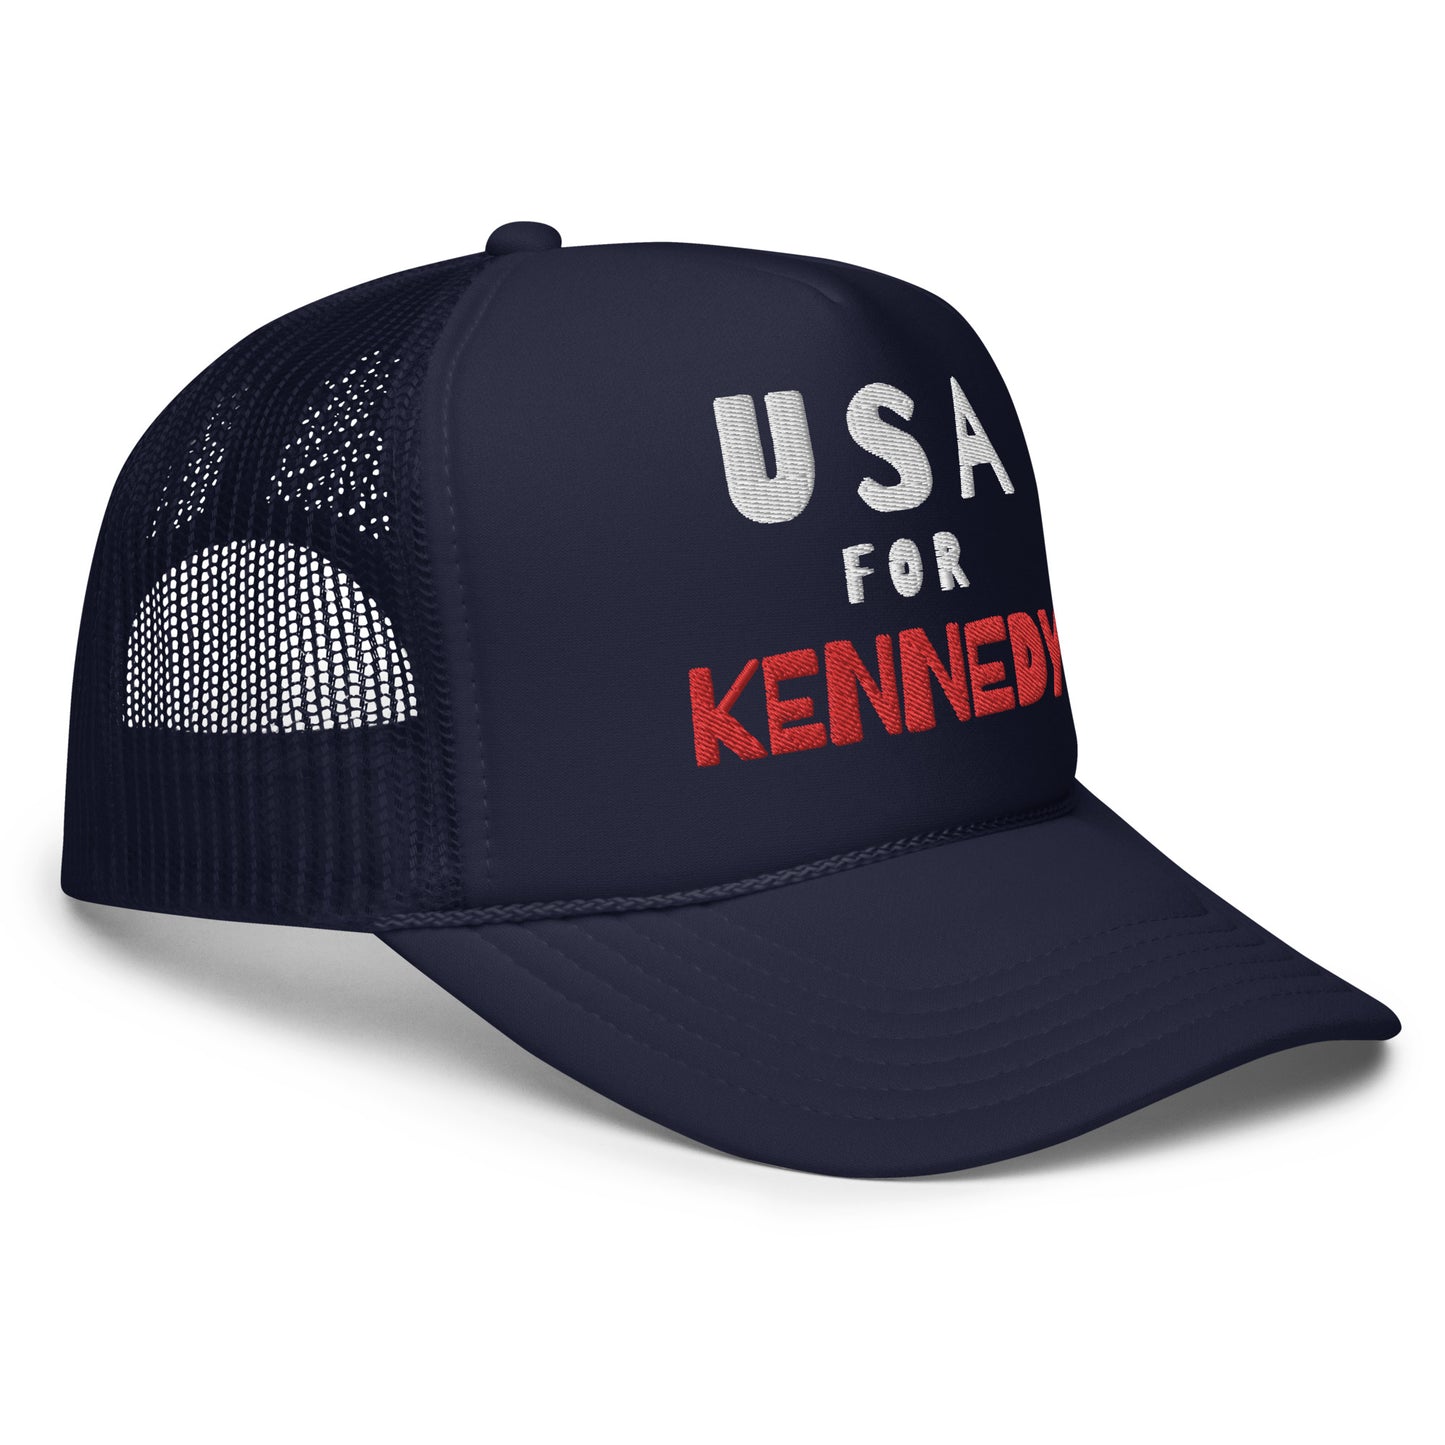 USA for Kennedy Foam Trucker Hat